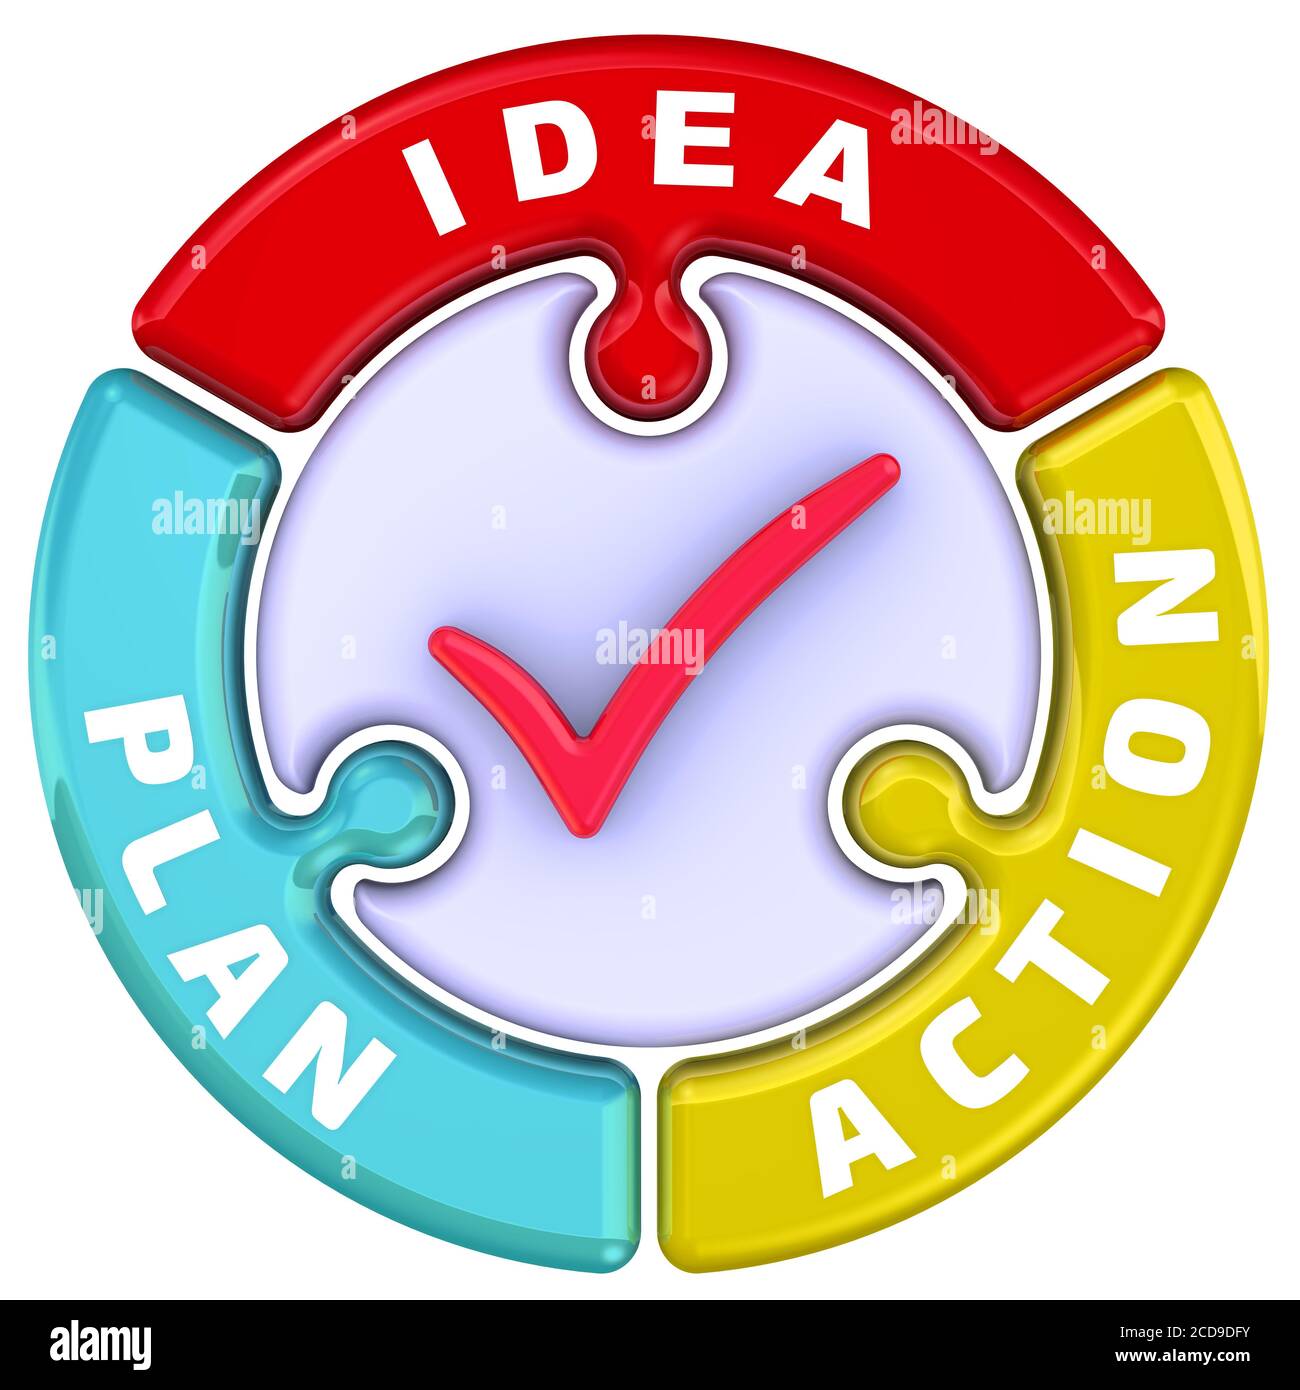 Idée, plan, action. Les mots IDÉE, PLAN, ACTION en forme de puzzle rond  avec une coche rouge. Illustration 3D Photo Stock - Alamy